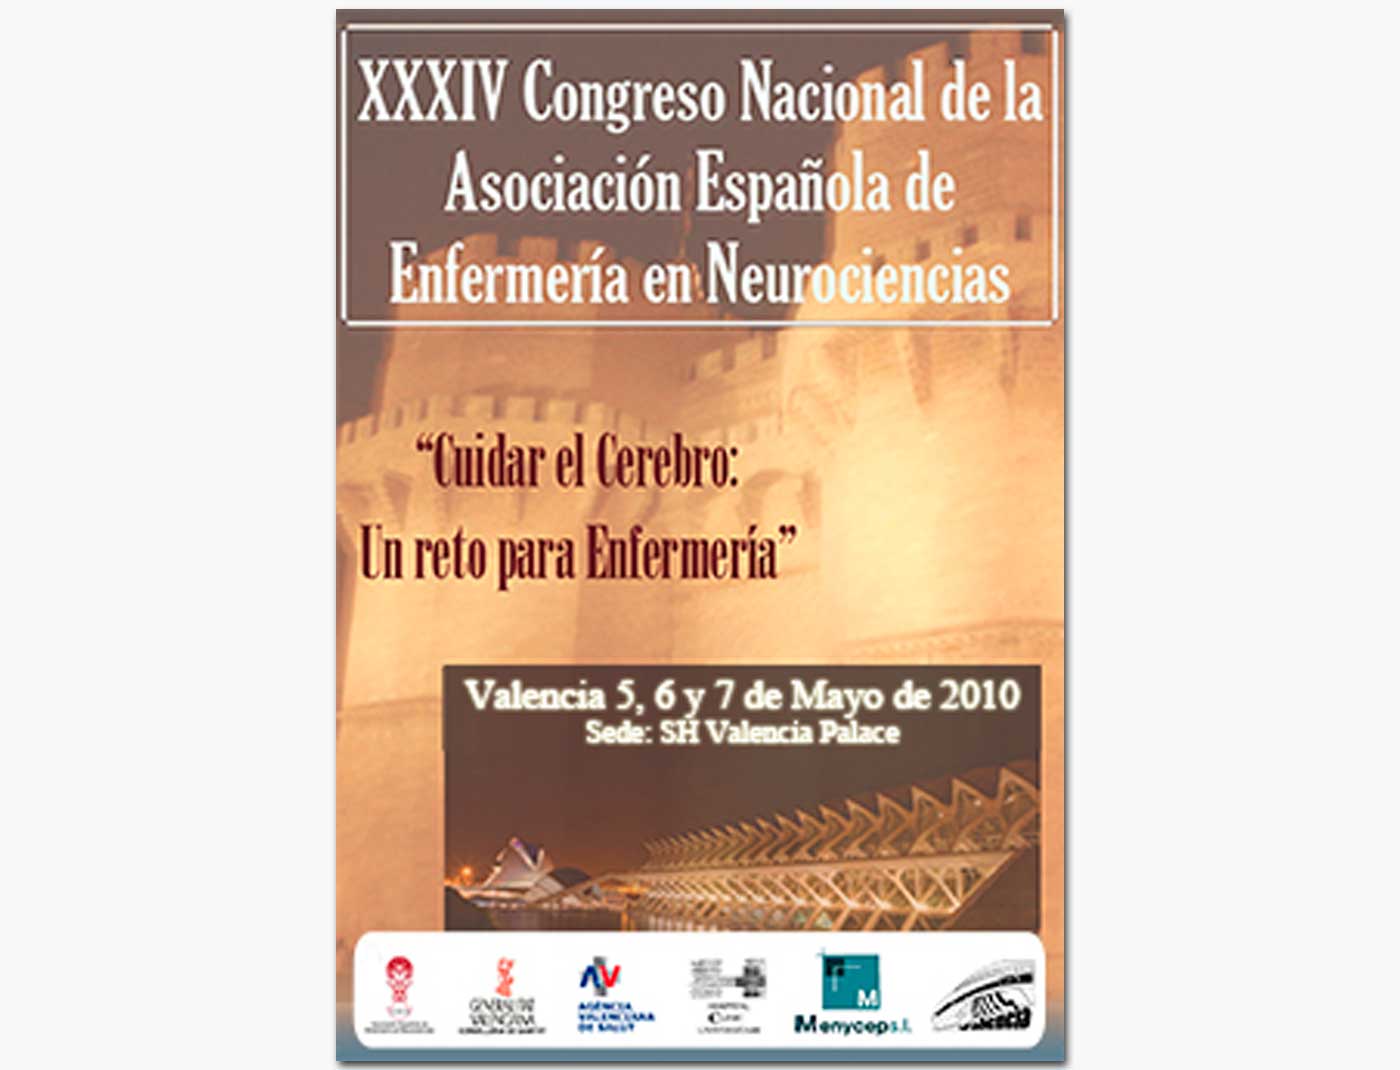 XXXIV Congreso Nacional de la Asociación Española de Enfermería en Neurociencias